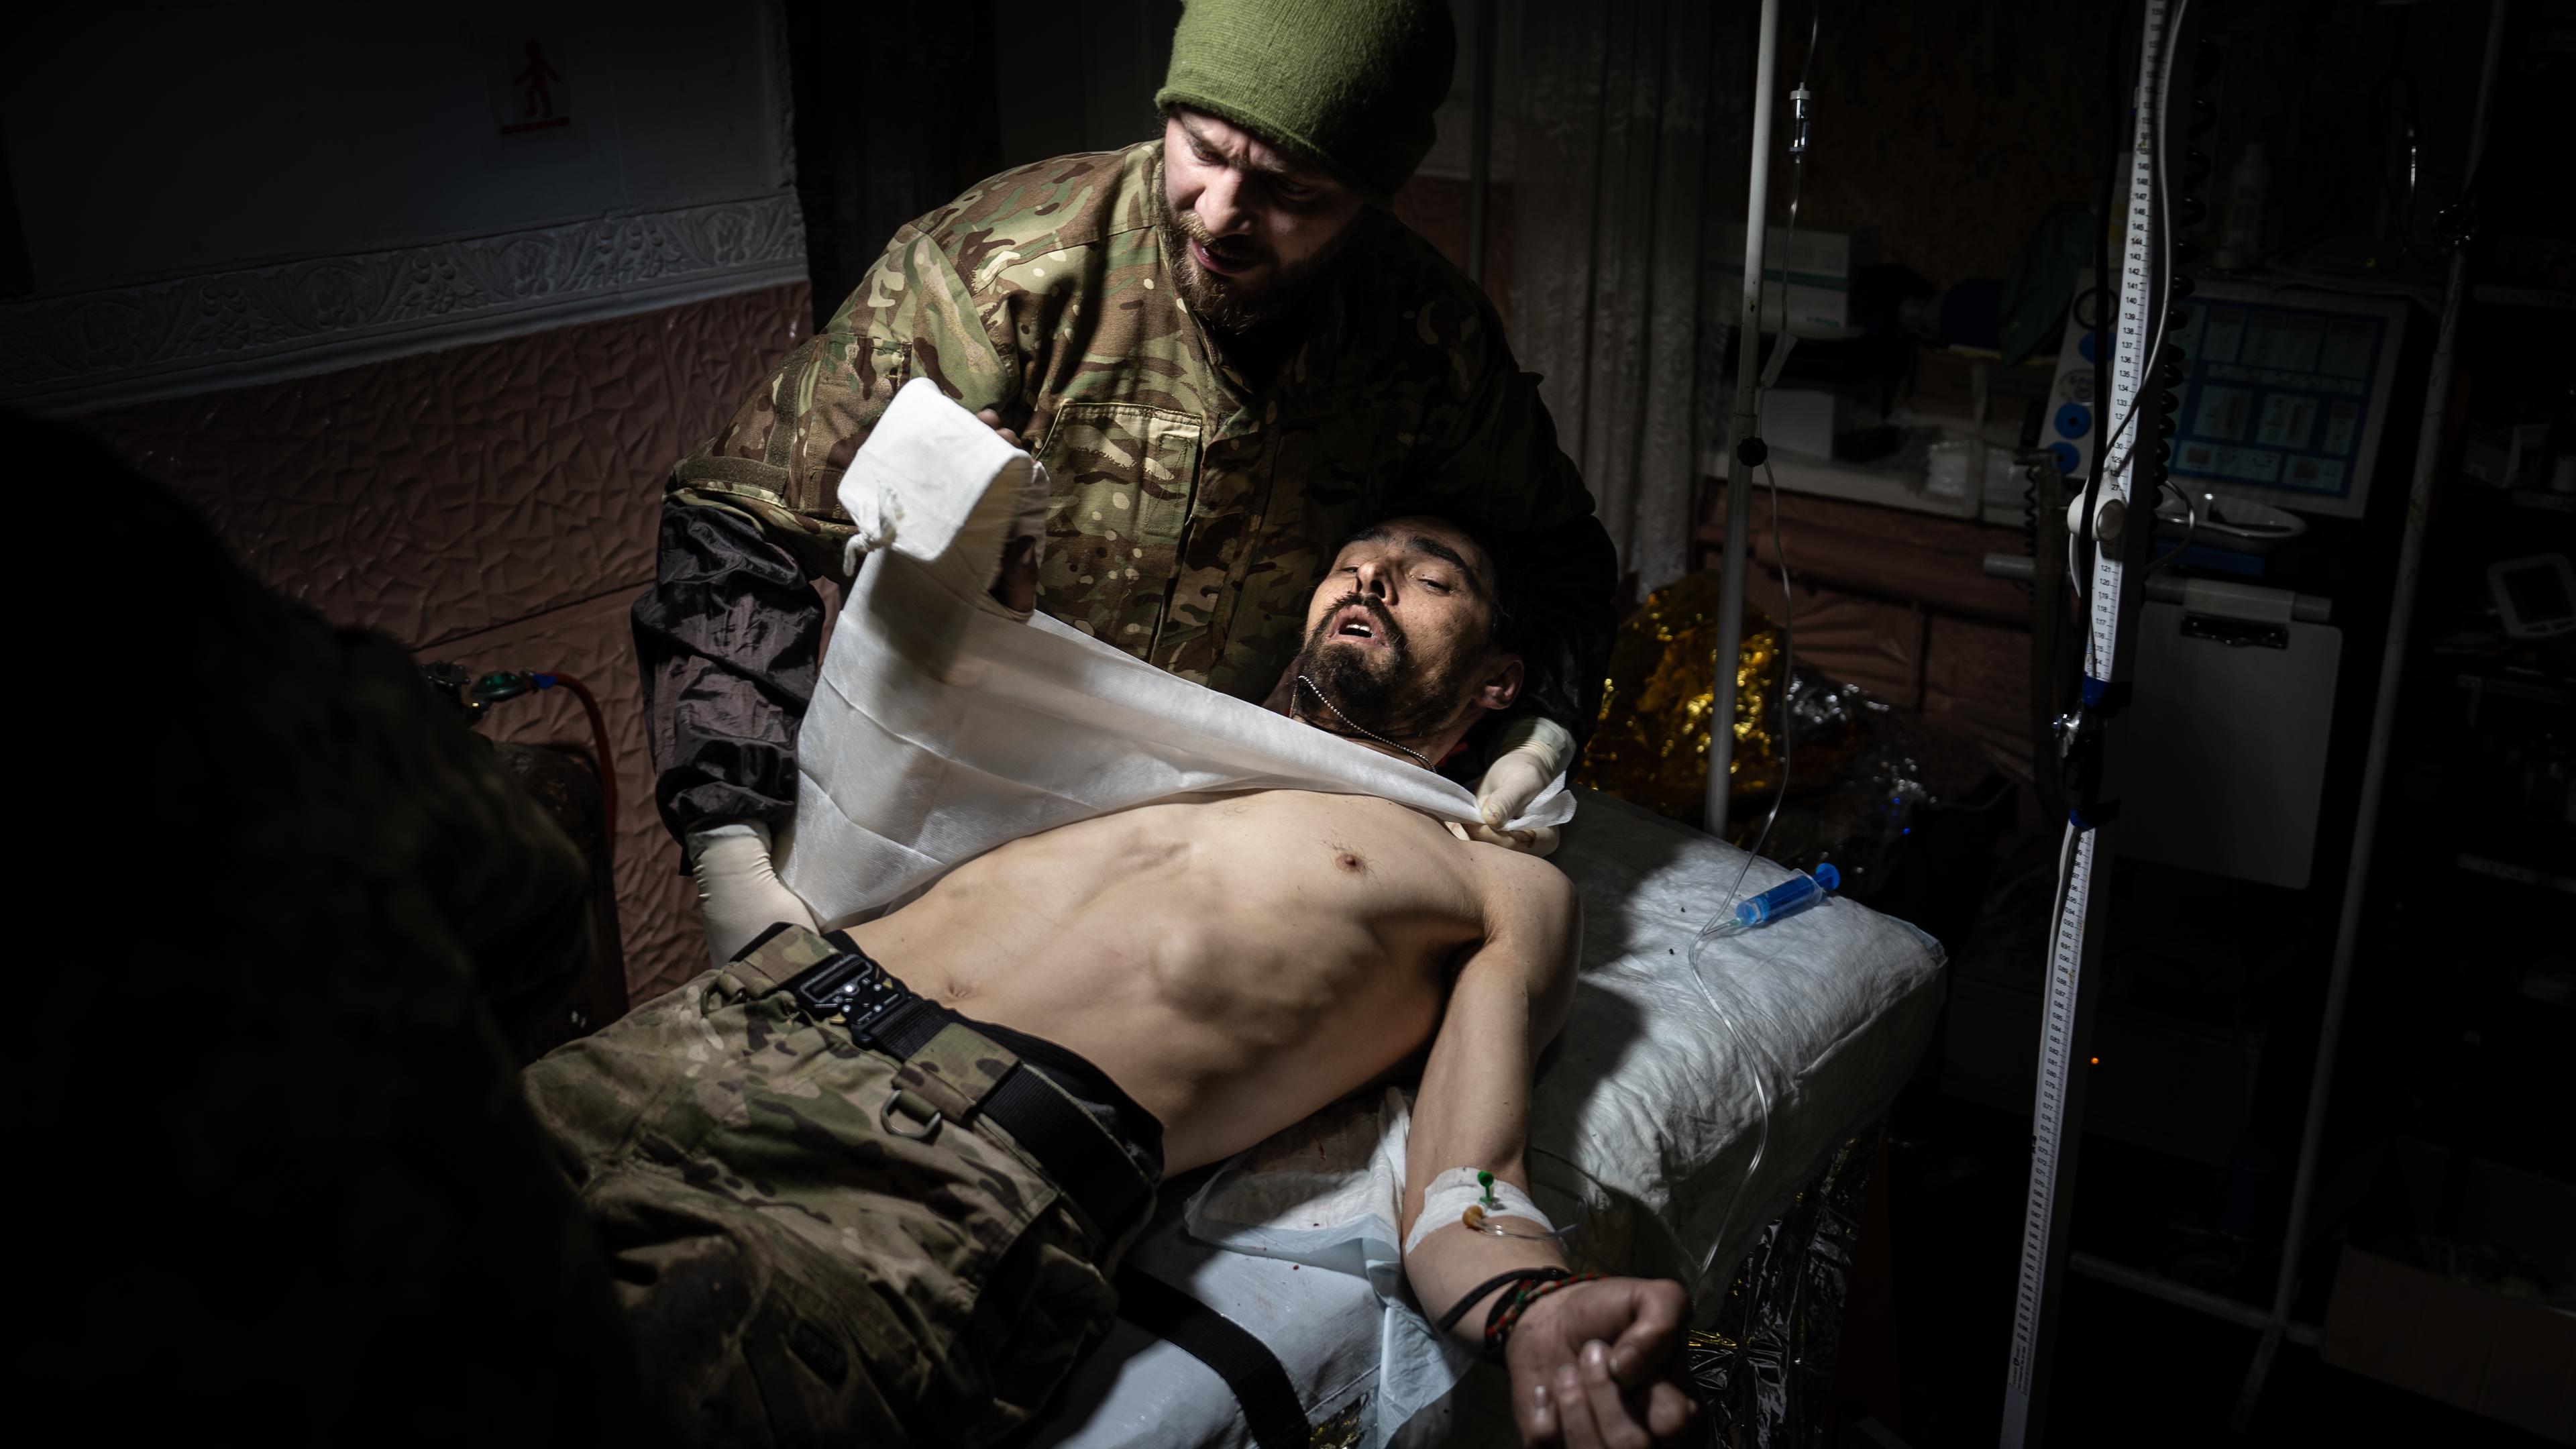 Ein verwundeter Soldat liegt auf einem Bett und wird behandelt.